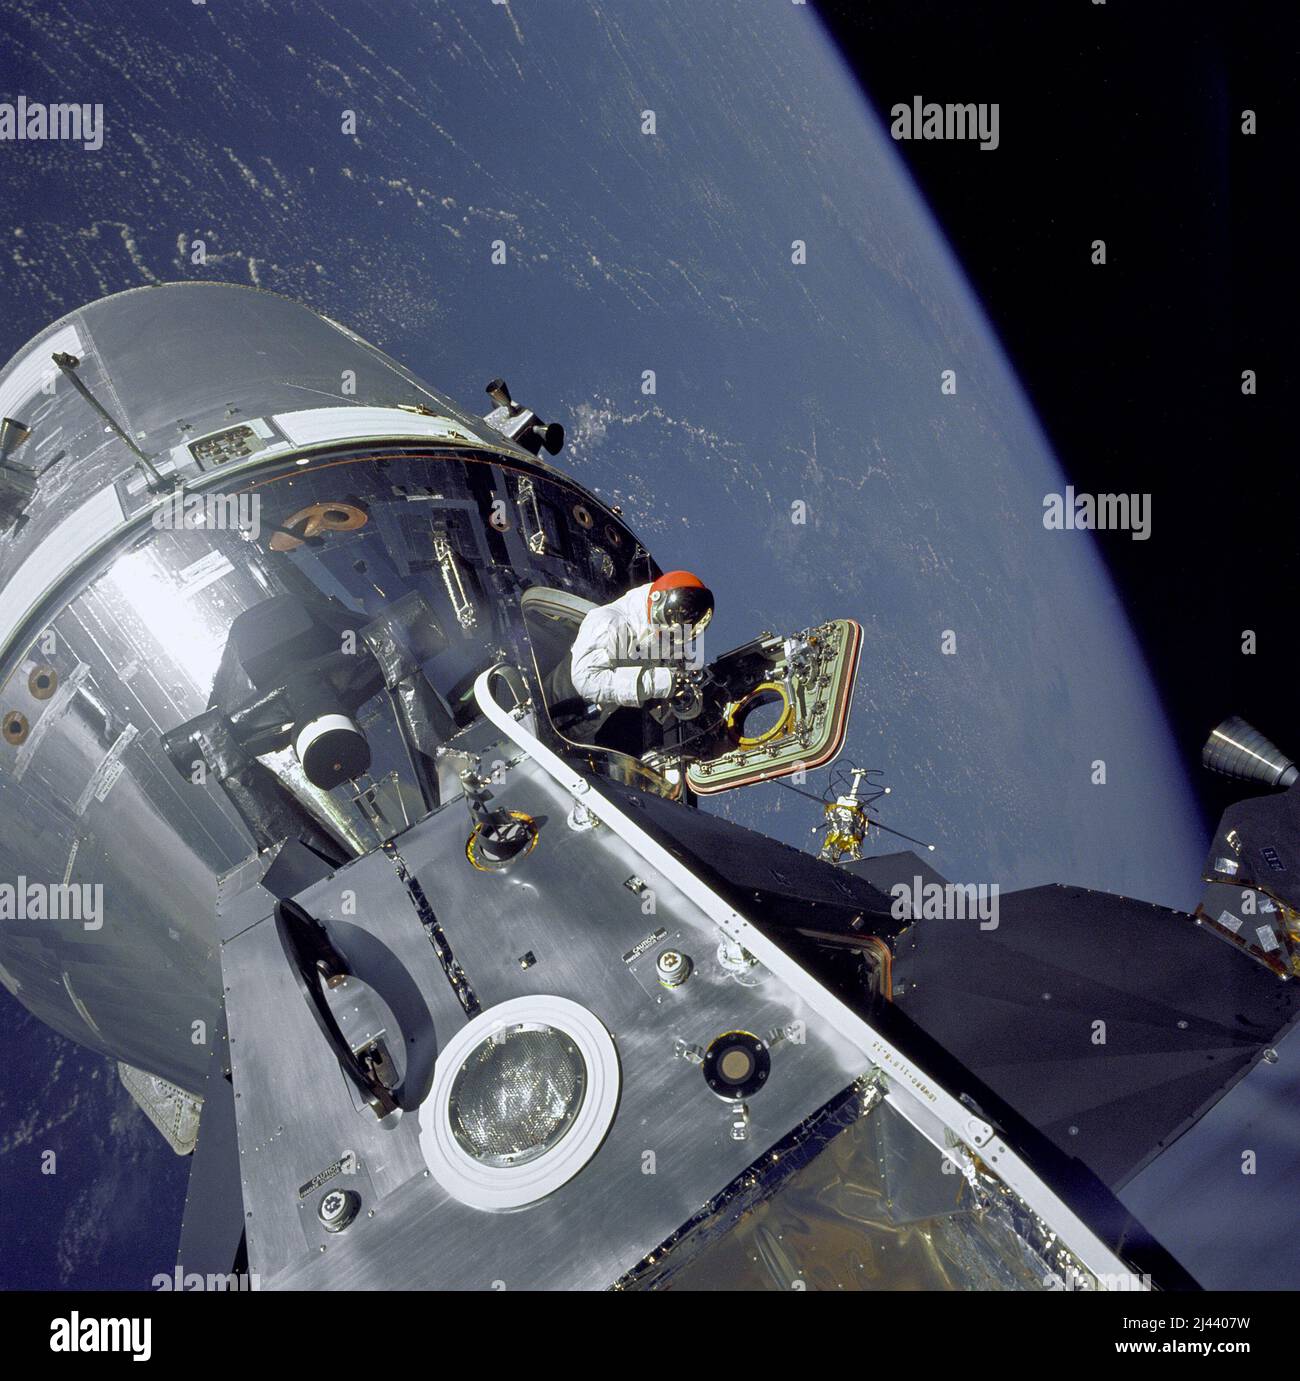 I moduli di comando/servizio (CSM) Apollo 9, soprannominati 'Gumdrop' e Lunar Module (LM), soprannominati 'Spider', sono mostrati ancorati insieme come pilota del modulo di comando David Scott in piedi nel portello aperto. Foto Stock